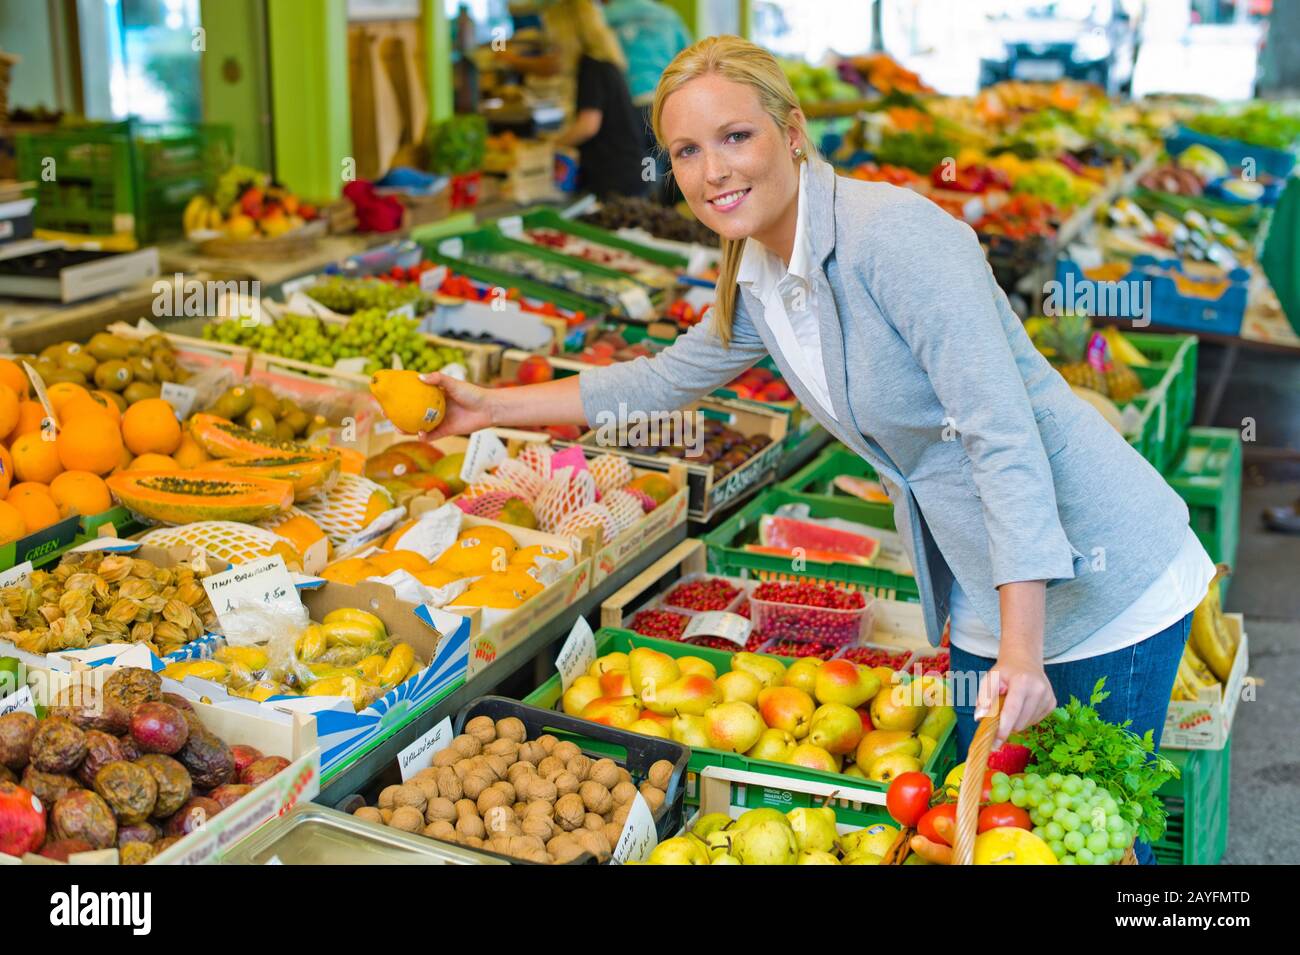 Eine junge Frau kauft Obst und Gemuese auf einem Wochenmarkt. Frische und gesunde Ernaehrung. Stock Photo